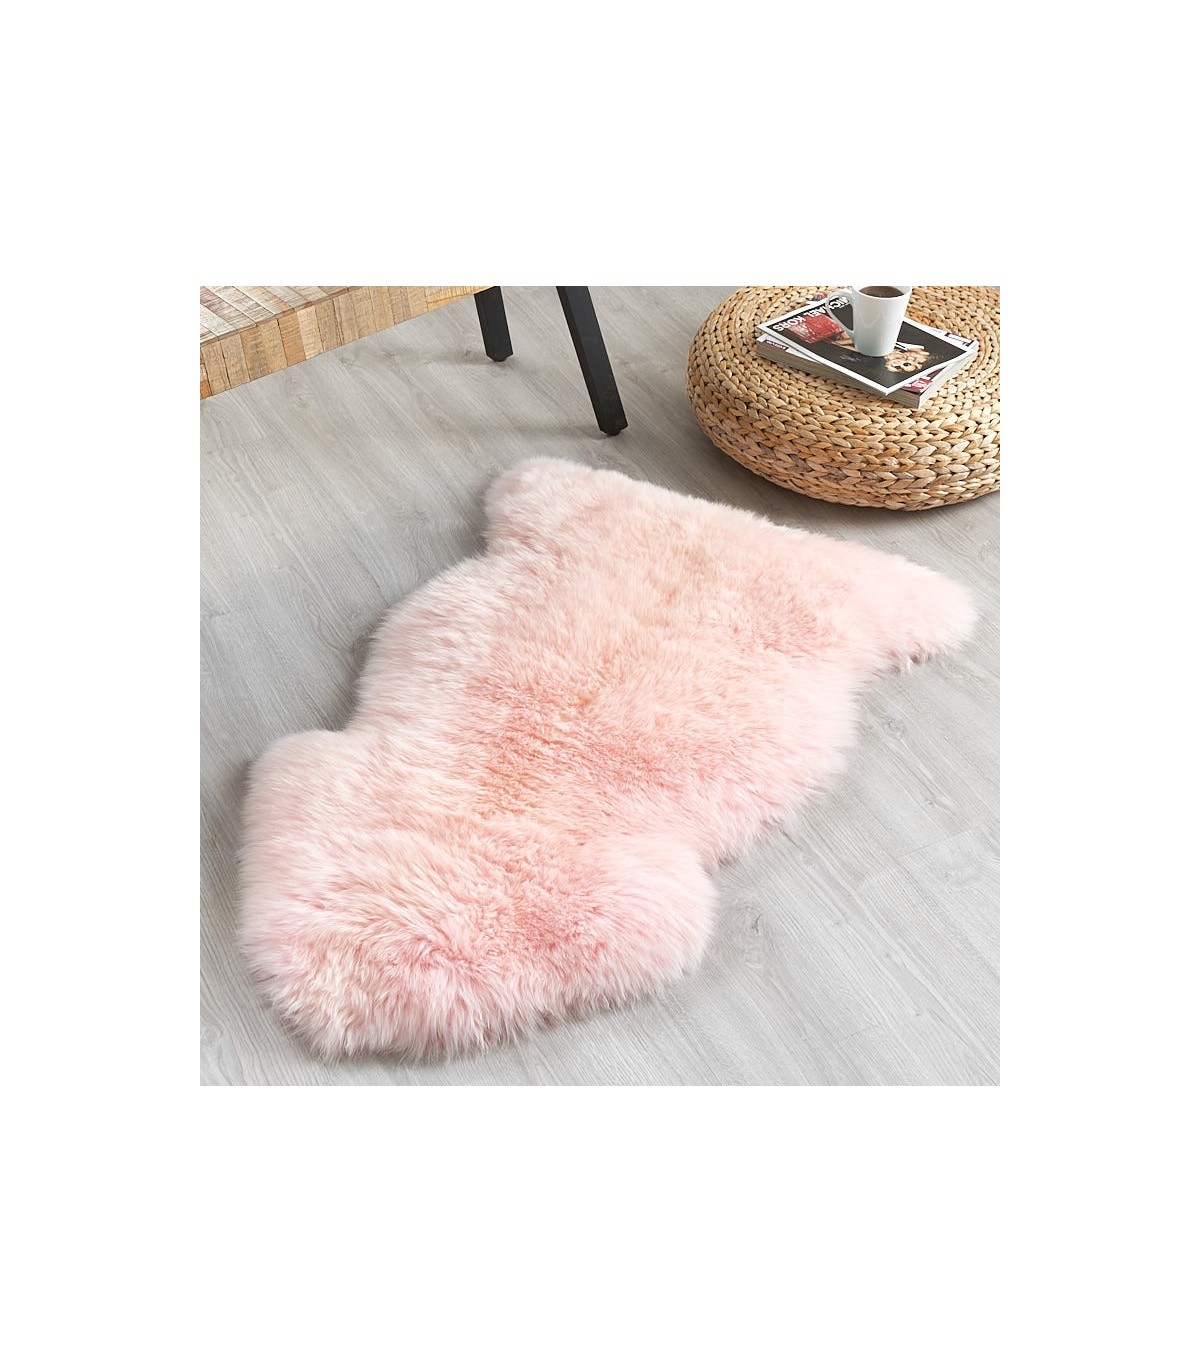 Candy Floss Pink Sheepskin Rug 2x3 5, Hot Pink Fur Rug